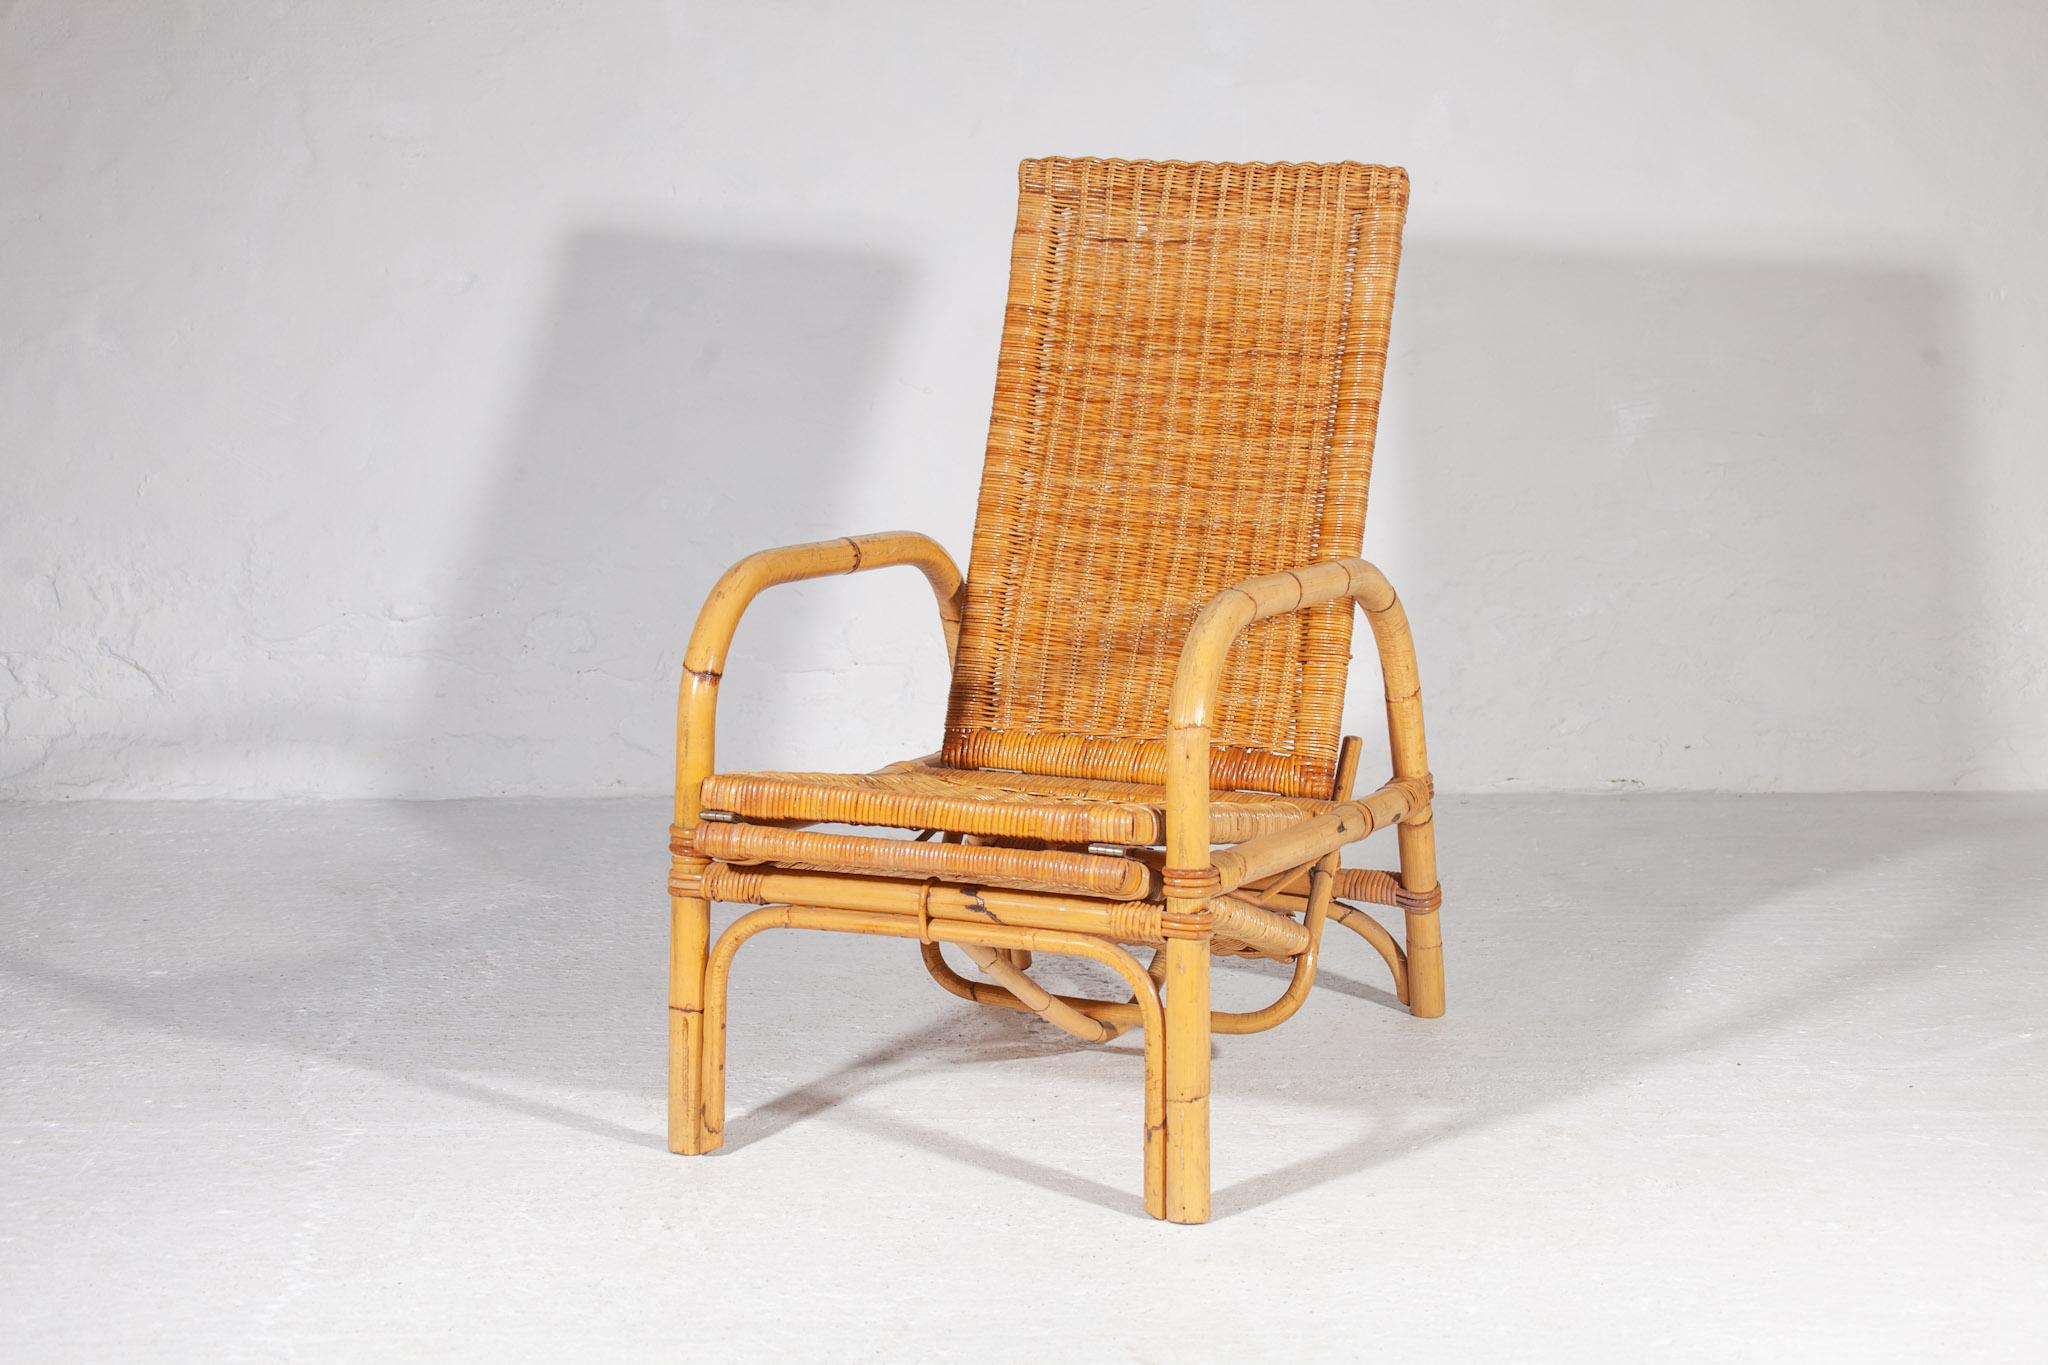 Lounge-Sessel aus Korbgeflecht im Boho-Stil, Chaiselongue mit verstellbarer Rückenlehne und ausziehbarer Ottomane. Die Rückenlehne lässt sich manuell zwischen sechs verschiedenen Höheneinstellungen verstellen. Der Loungesessel ist in einem sehr